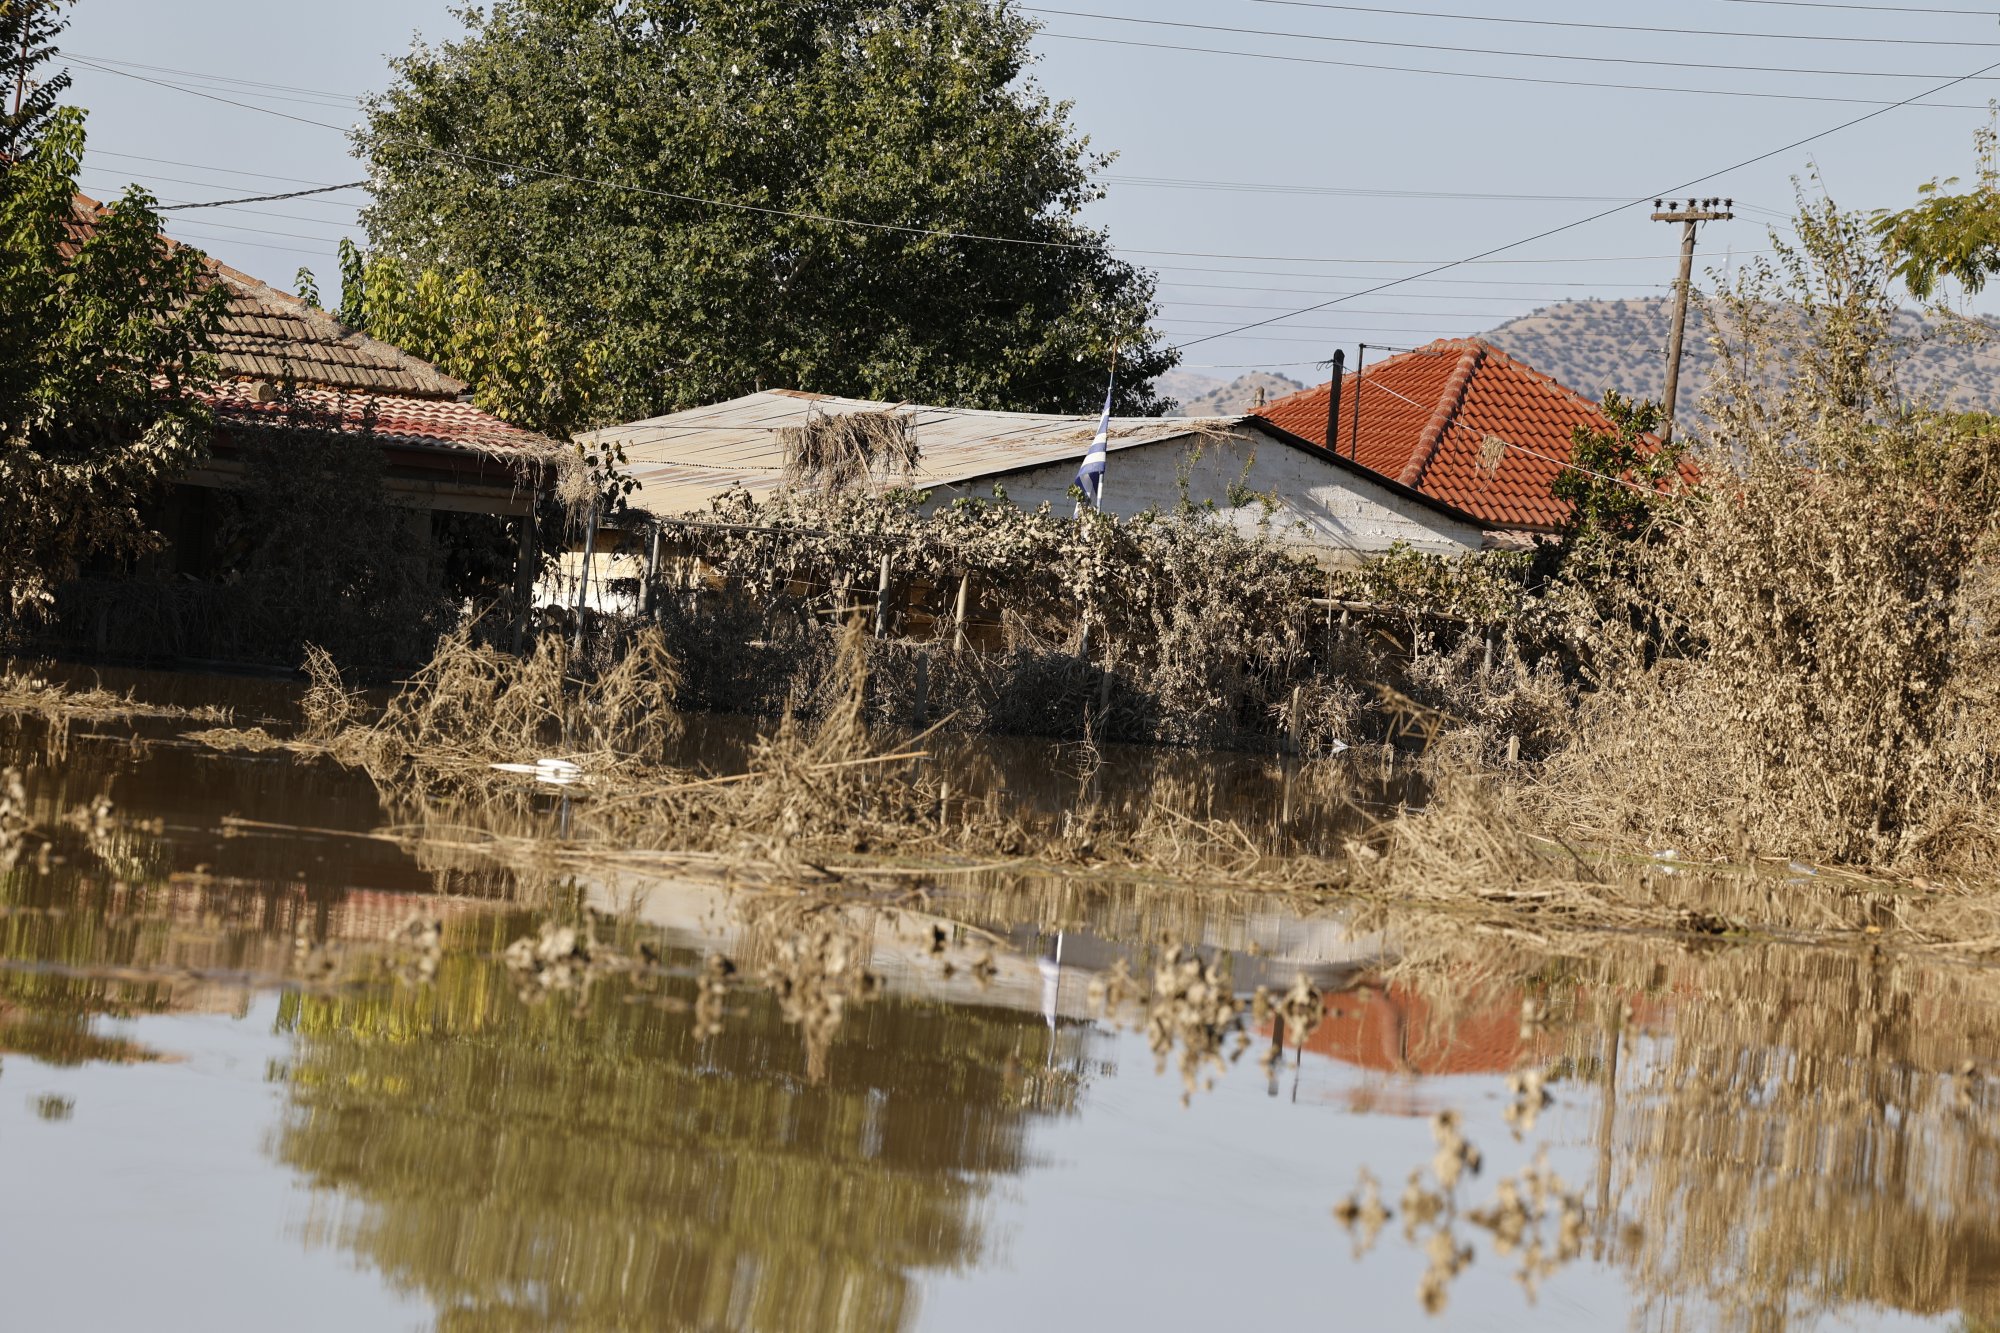 Κακοκαιρία Daniel: Γιατί έπεσαν σπίτια στις πλημμυρισμένες περιοχές - Τι πρέπει να γίνει από εδώ και πέρα